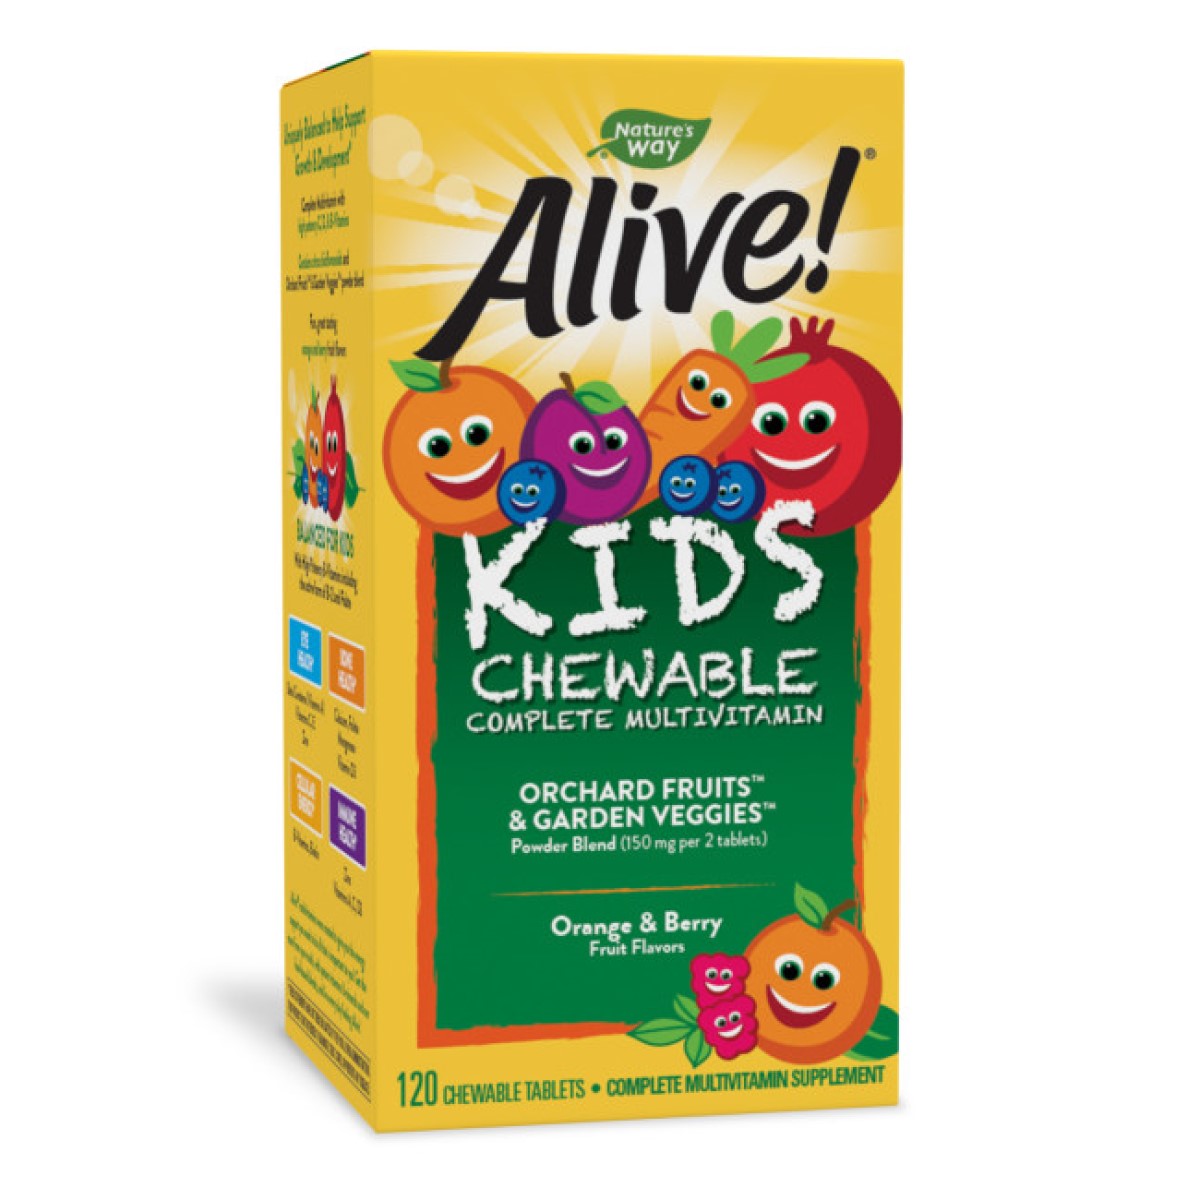 Primary image of Alive! Children's Chewable Multi-Vitamin